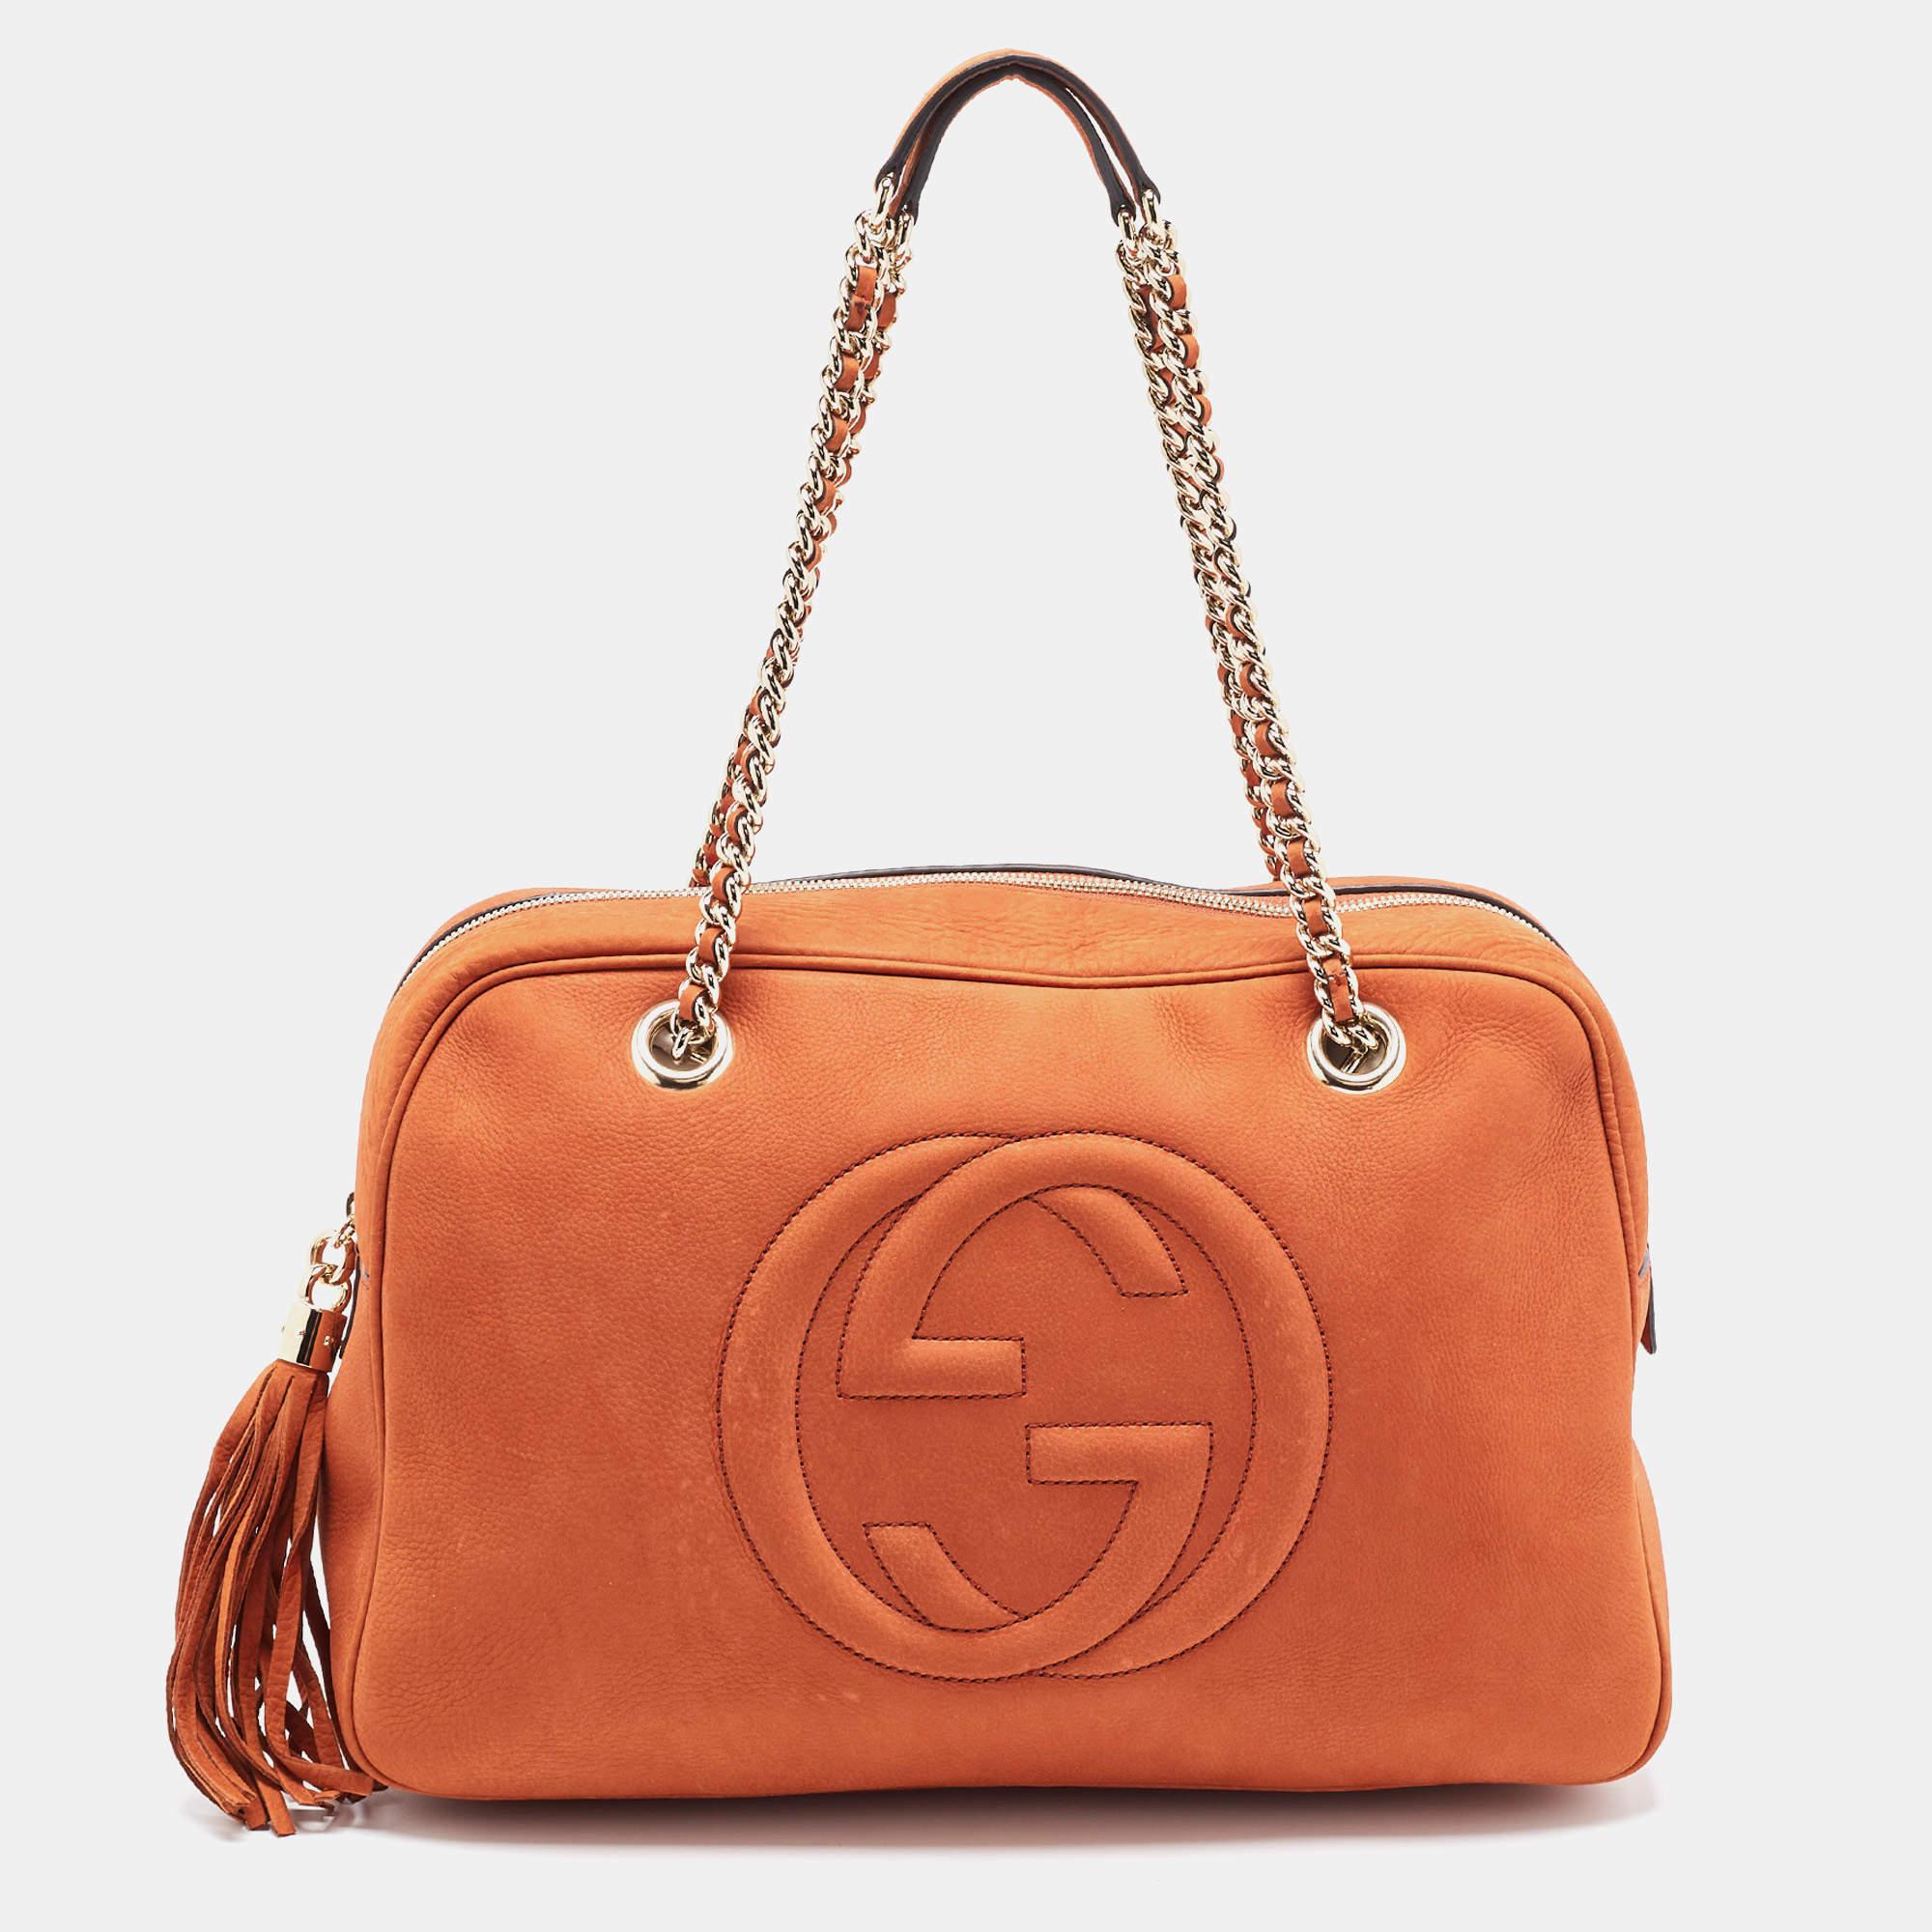 Offrez-vous le luxe avec ce sac Gucci SOHO. Méticuleusement fabriqué à partir de matériaux de première qualité, il allie un design exquis, un savoir-faire impeccable et une élégance intemporelle. Cet accessoire de mode rehausse votre style.

